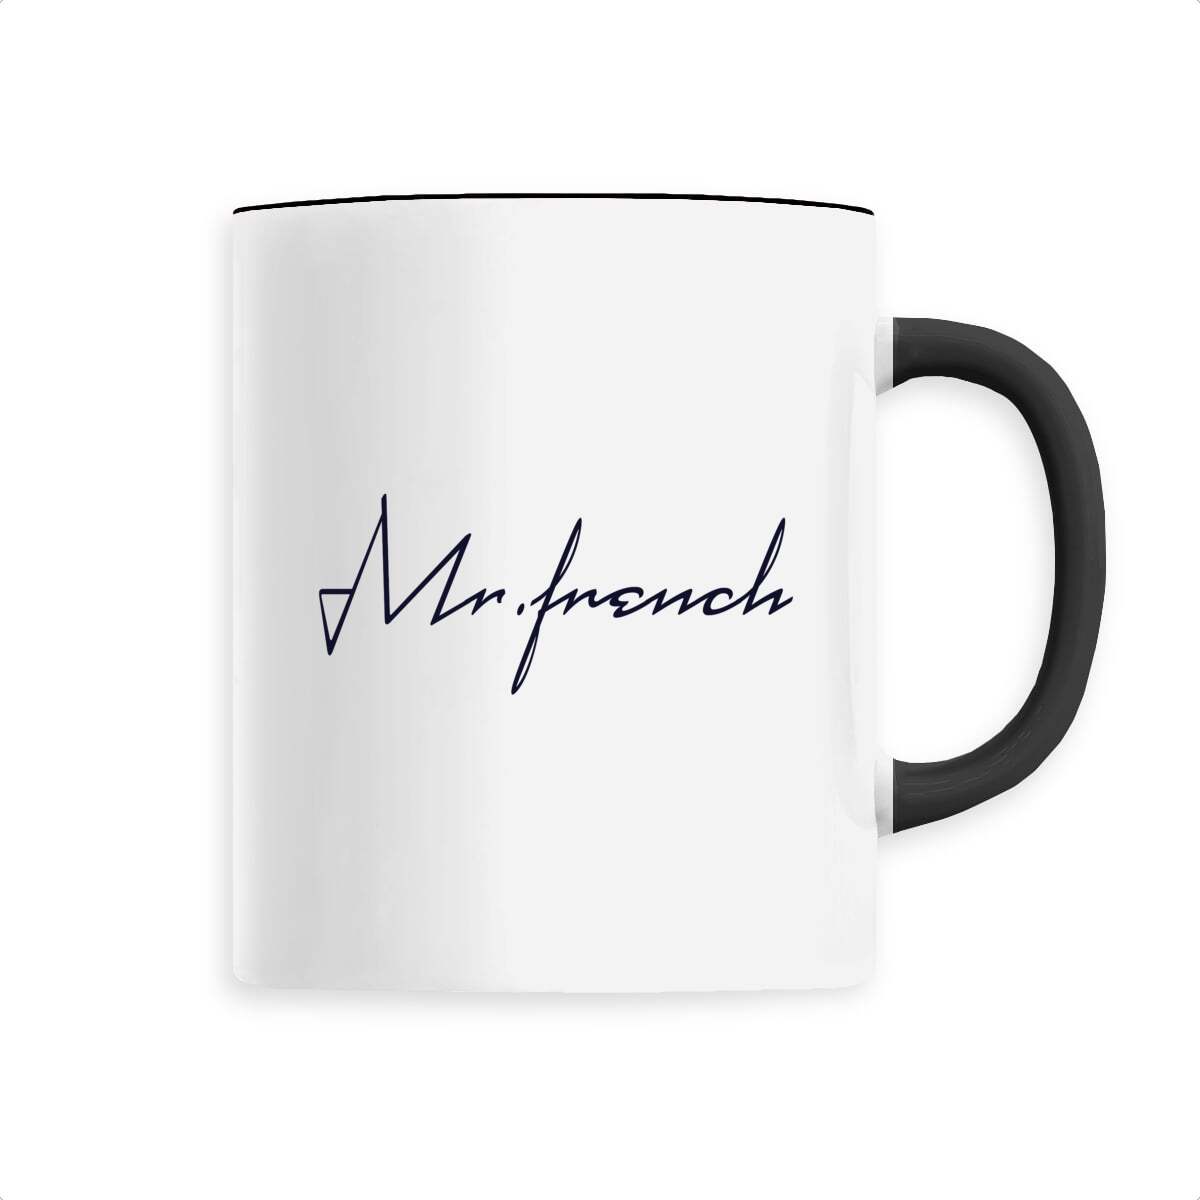 Mug Céramique - Mr French, mug Mr French en céramique de T-French, mug céramique avec impression, mug idée cadeau fête des pères, mug french touch, mug homme Mr French, mug french, mug cadeau, mug noir